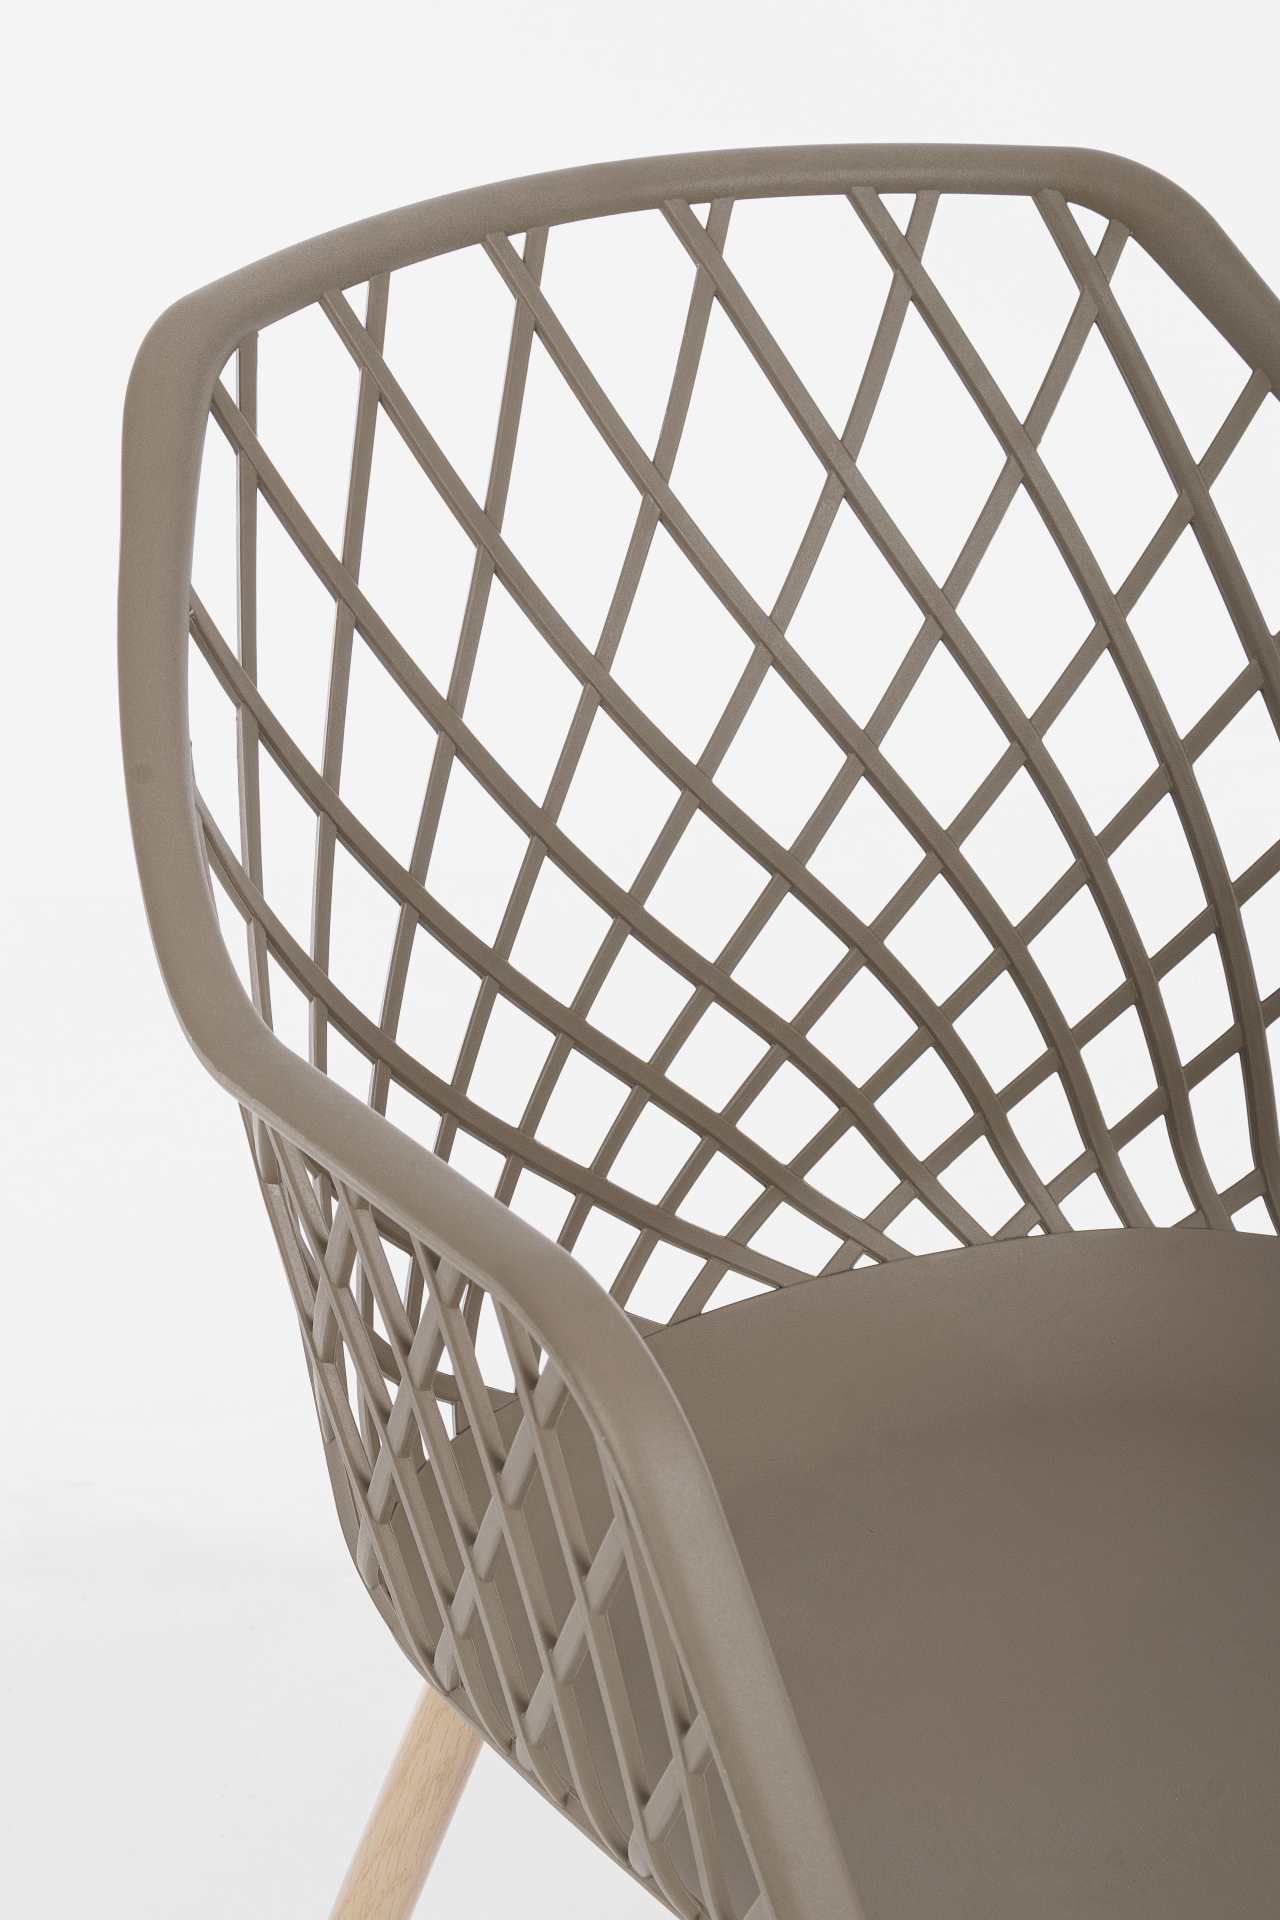 Der Stuhl Optik wurde aus Kunststoff gefertigt, welcher einen Taupe Farbton besitzt. Das Gestell ist aus Metall und hat eine Holz-Optik. Das Design des Stuhls ist modern gehalten. Die Sitzhöhe beträgt 44 cm.